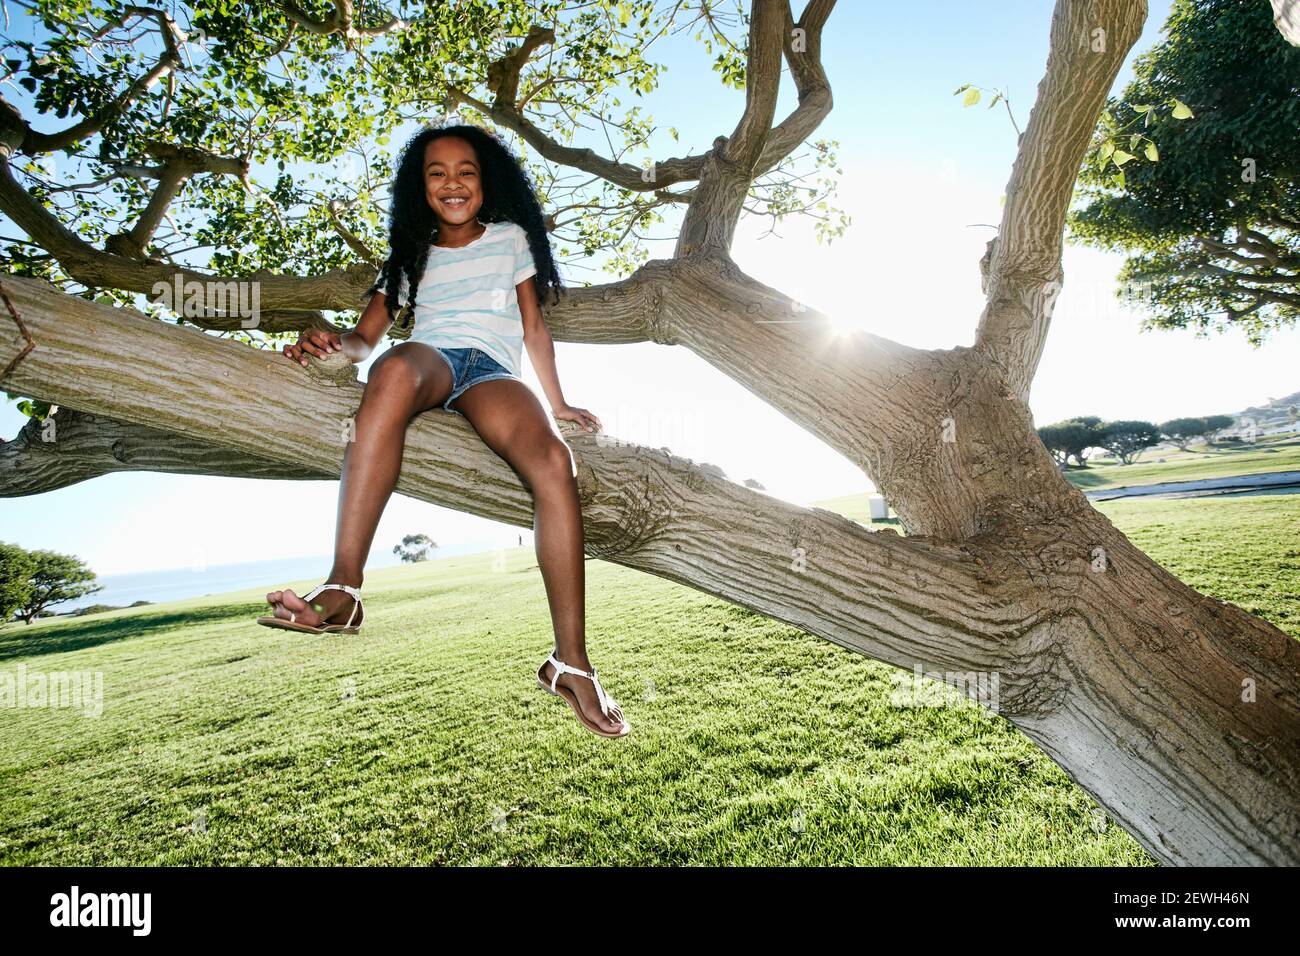 Jeune fille de race mixte assise dans une branche d'arbre Banque D'Images